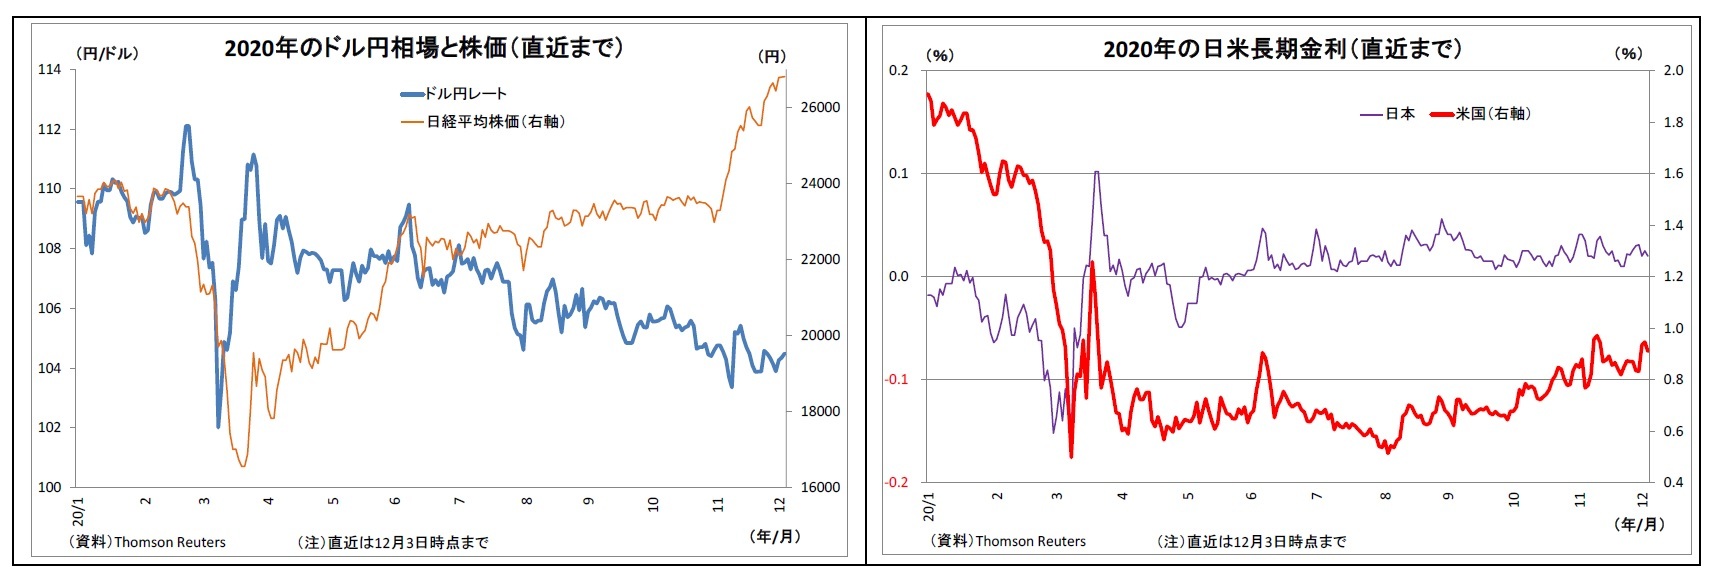 2020年のドル円相場と株価（直近まで）/2020年の日米長期金利（直近まで）